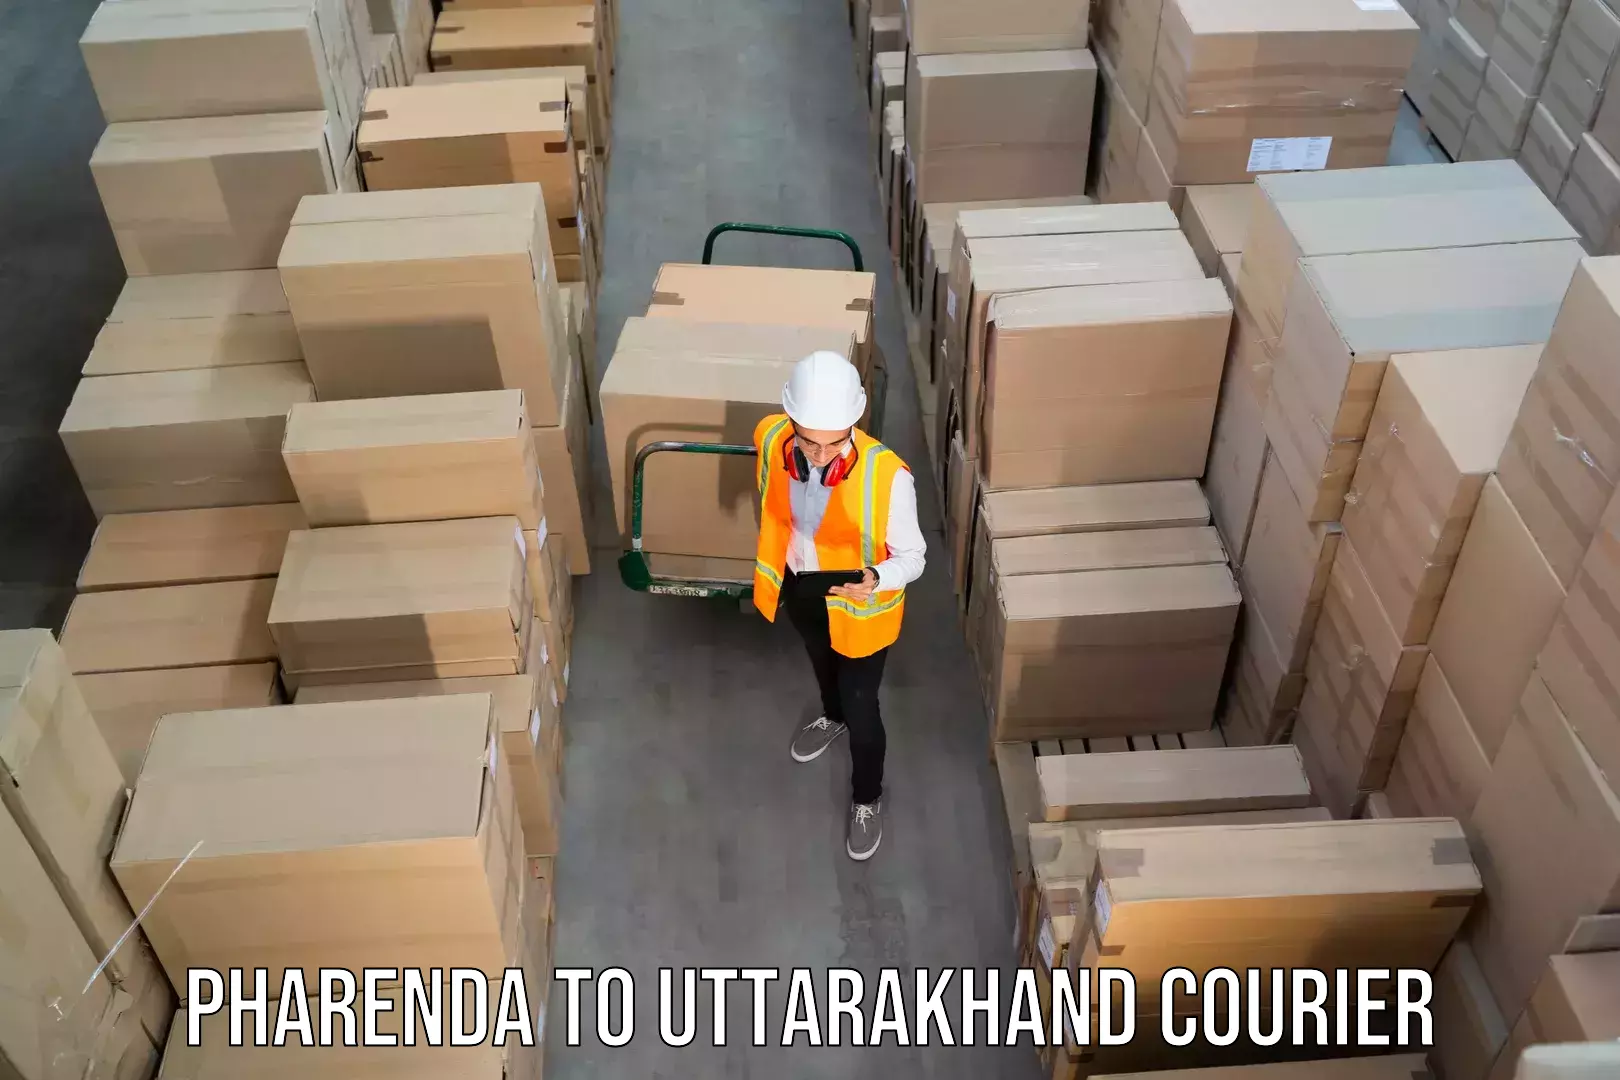 24-hour courier service Pharenda to Uttarakhand